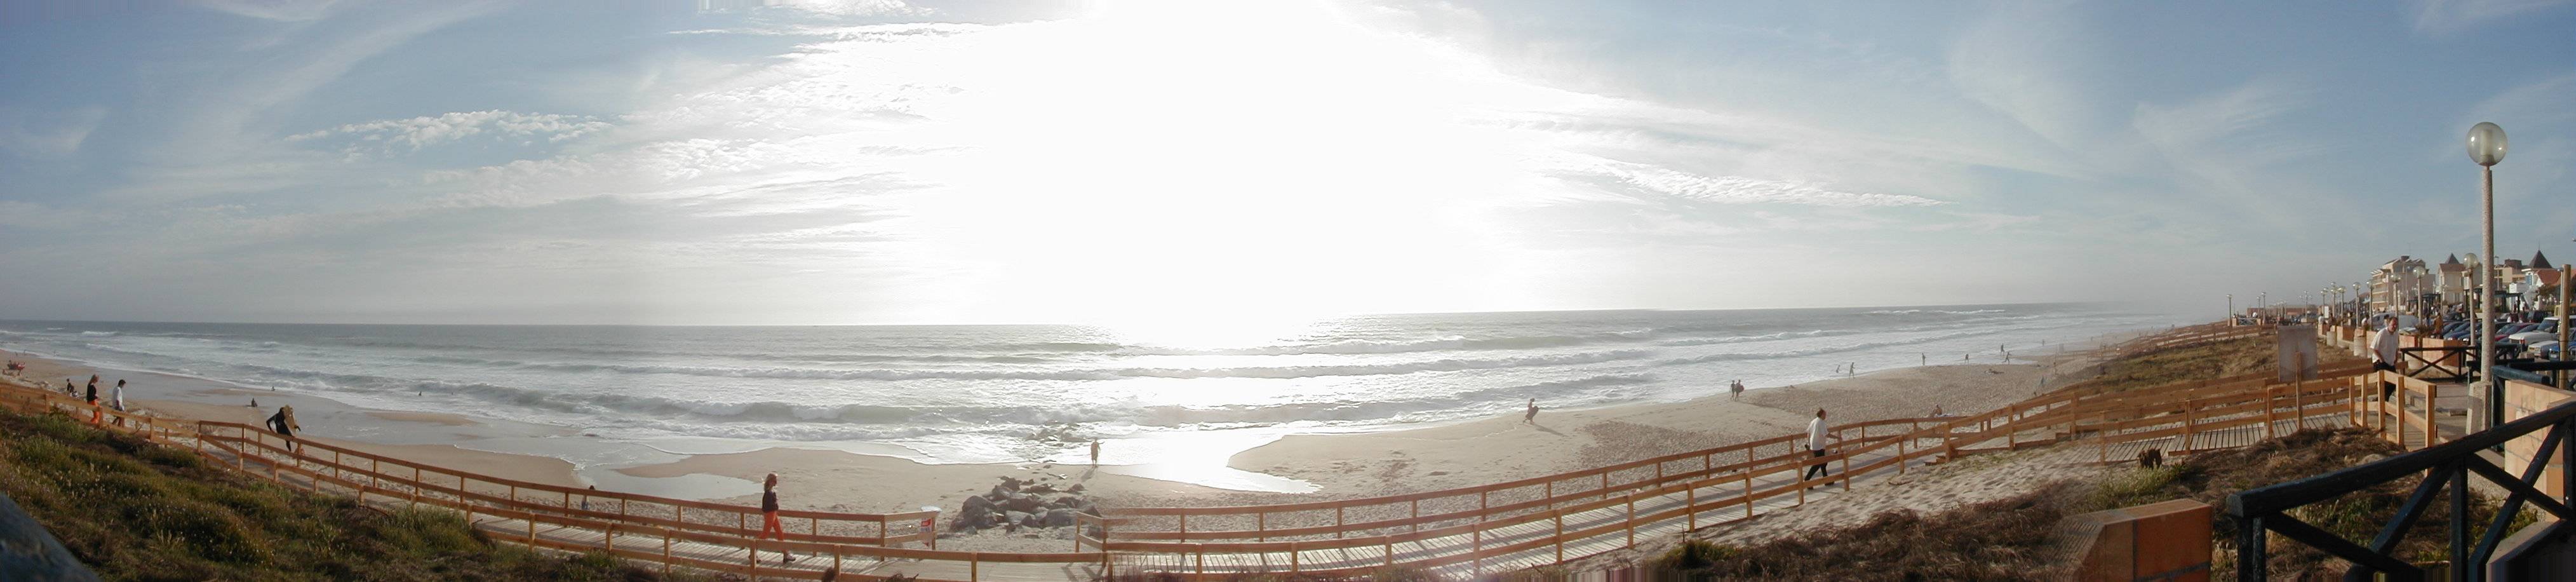 Panoramabild Atlantikküste